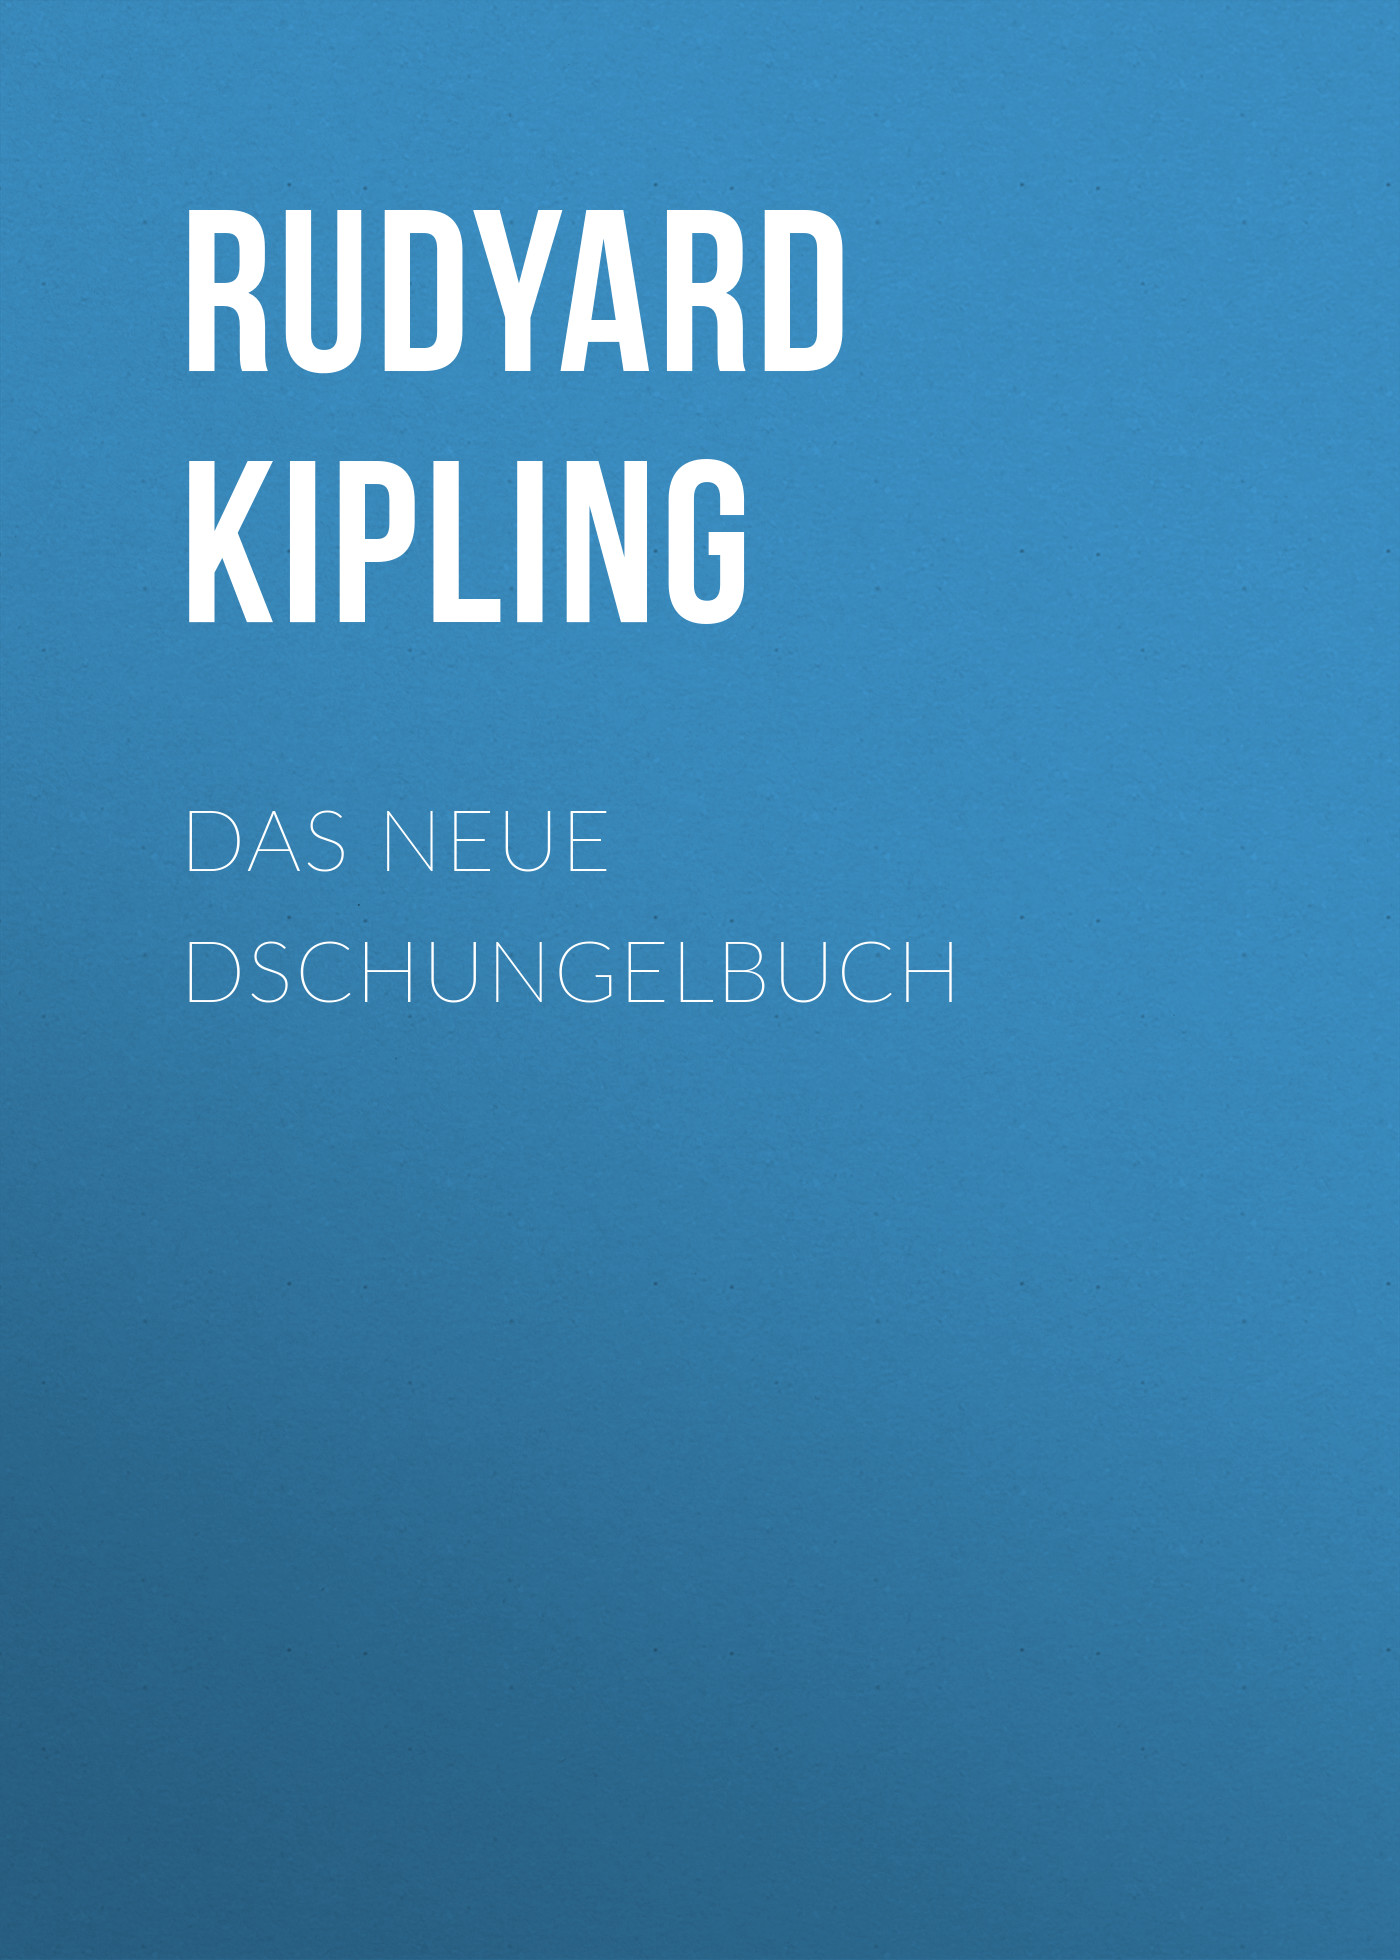 Книга Das neue Dschungelbuch из серии , созданная Rudyard Kipling, может относится к жанру Зарубежная классика. Стоимость электронной книги Das neue Dschungelbuch с идентификатором 48634212 составляет 0 руб.